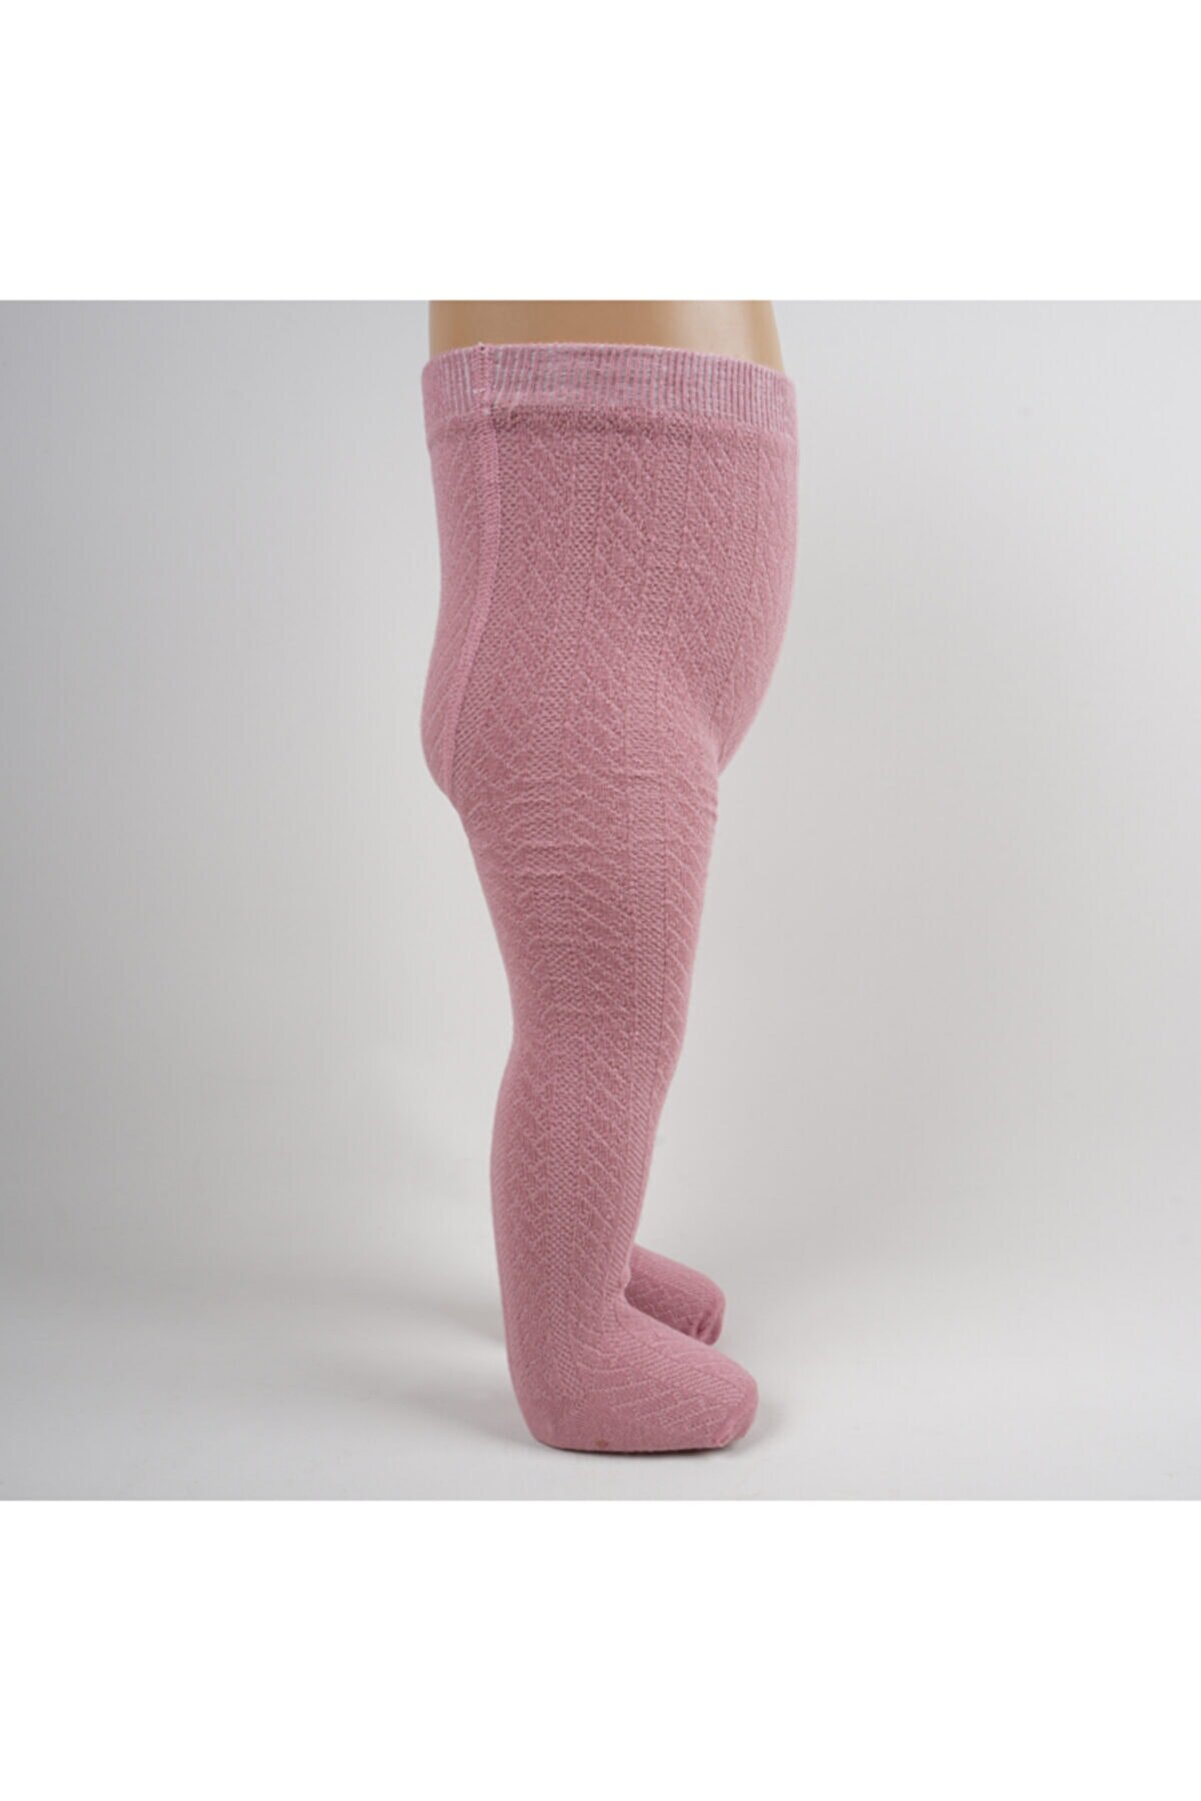 Artı Kız Bebek Pembe Kabartma Külotlu Çorap